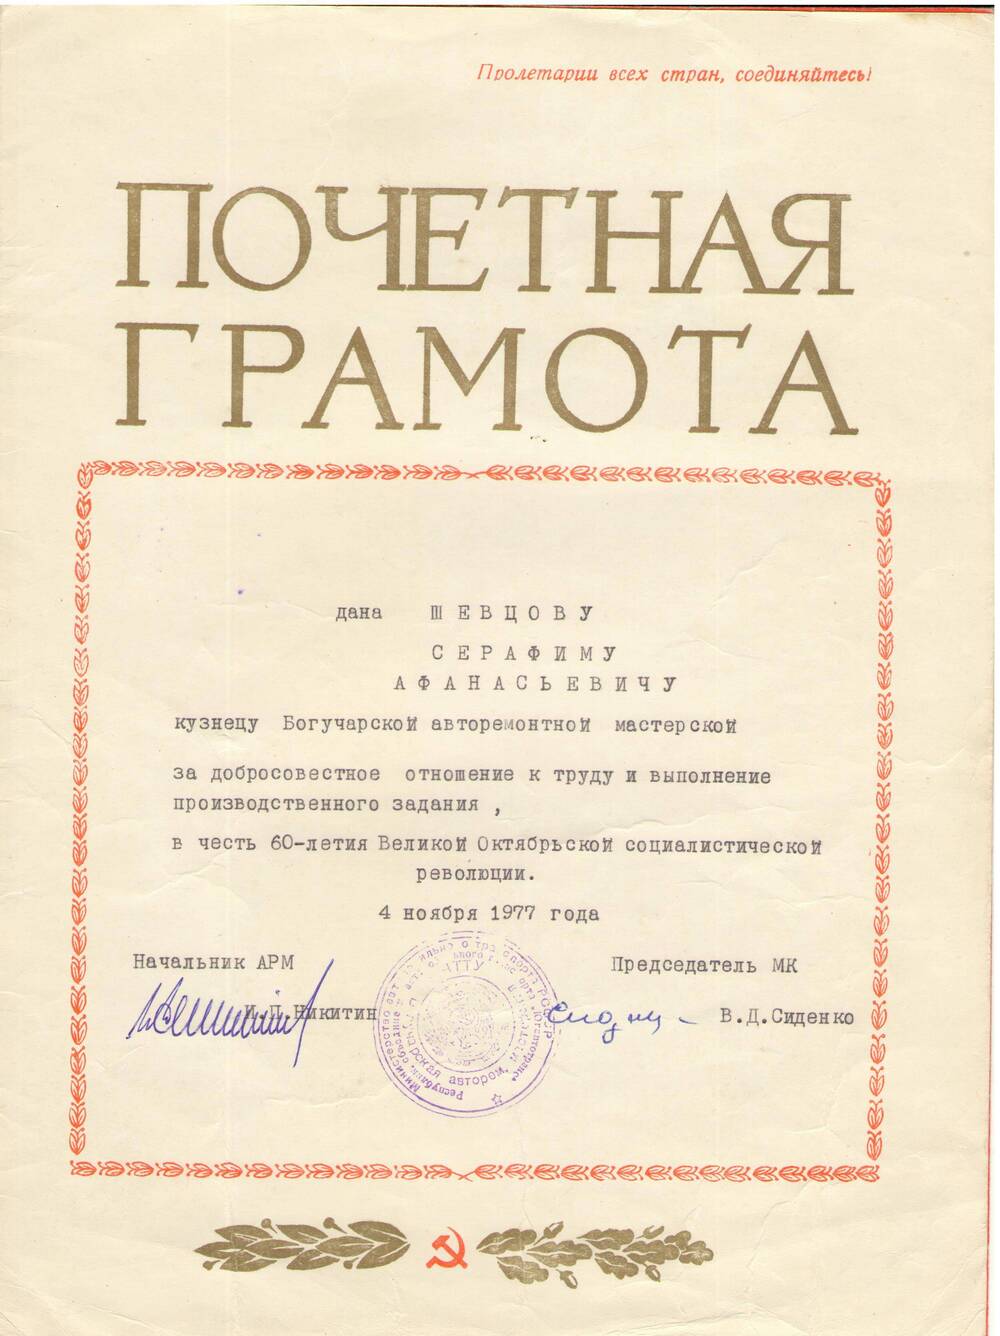 Почетная грамота Шевцову Серафиму Афанасьевичу  в честь 60 летия Великого Октября, 4 ноября 1977 г.